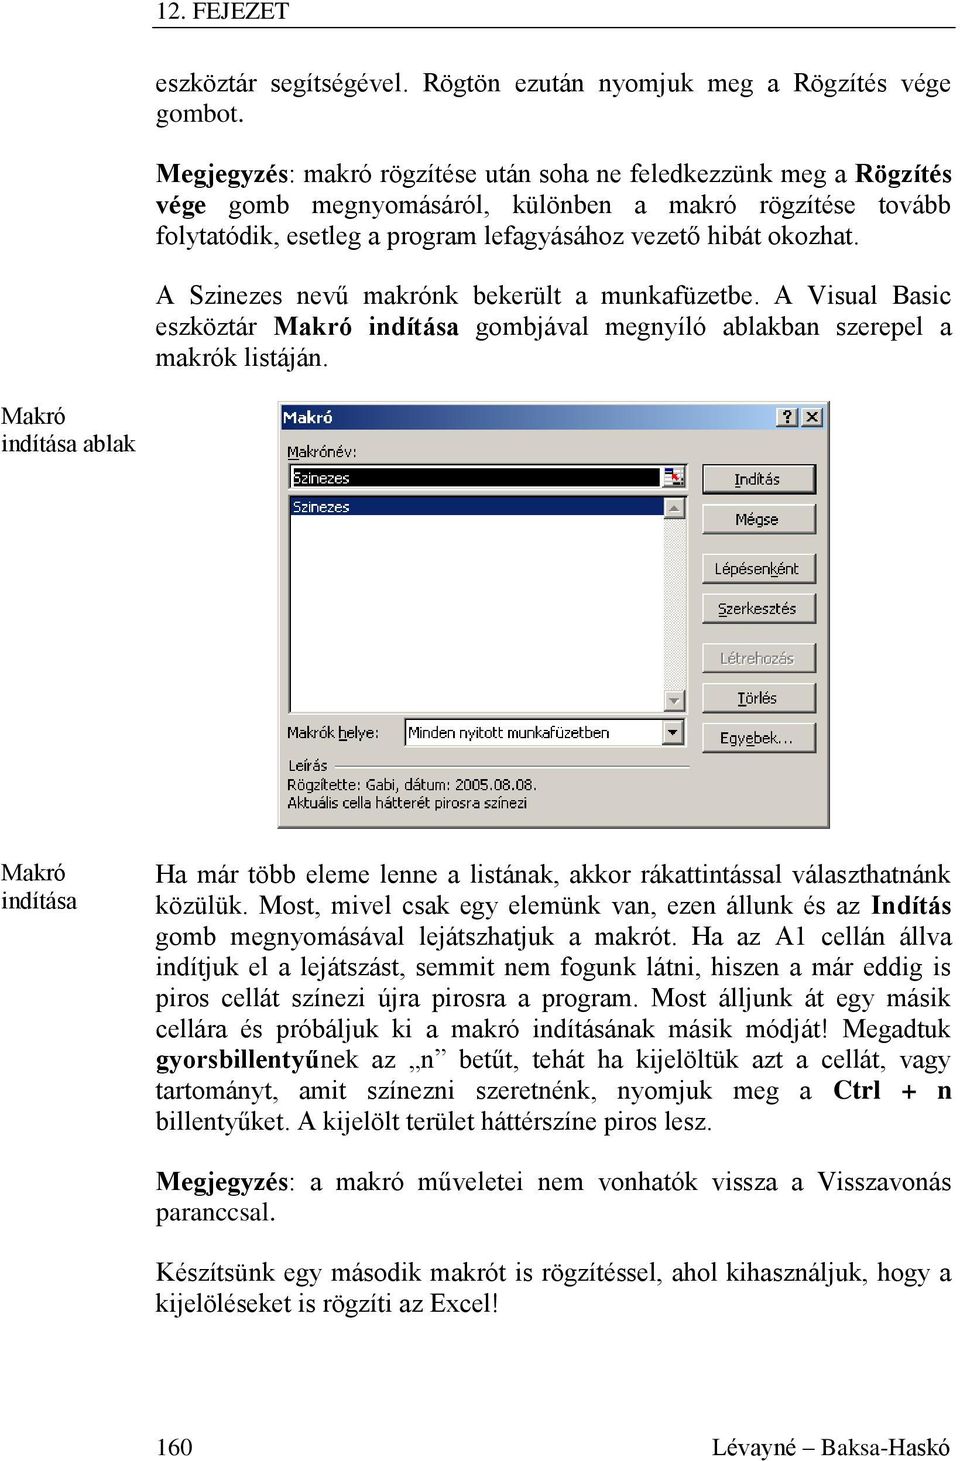 A Szinezes nevű makrónk bekerült a munkafüzetbe. A Visual Basic eszköztár Makró indítása gombjával megnyíló ablakban szerepel a makrók listáján.